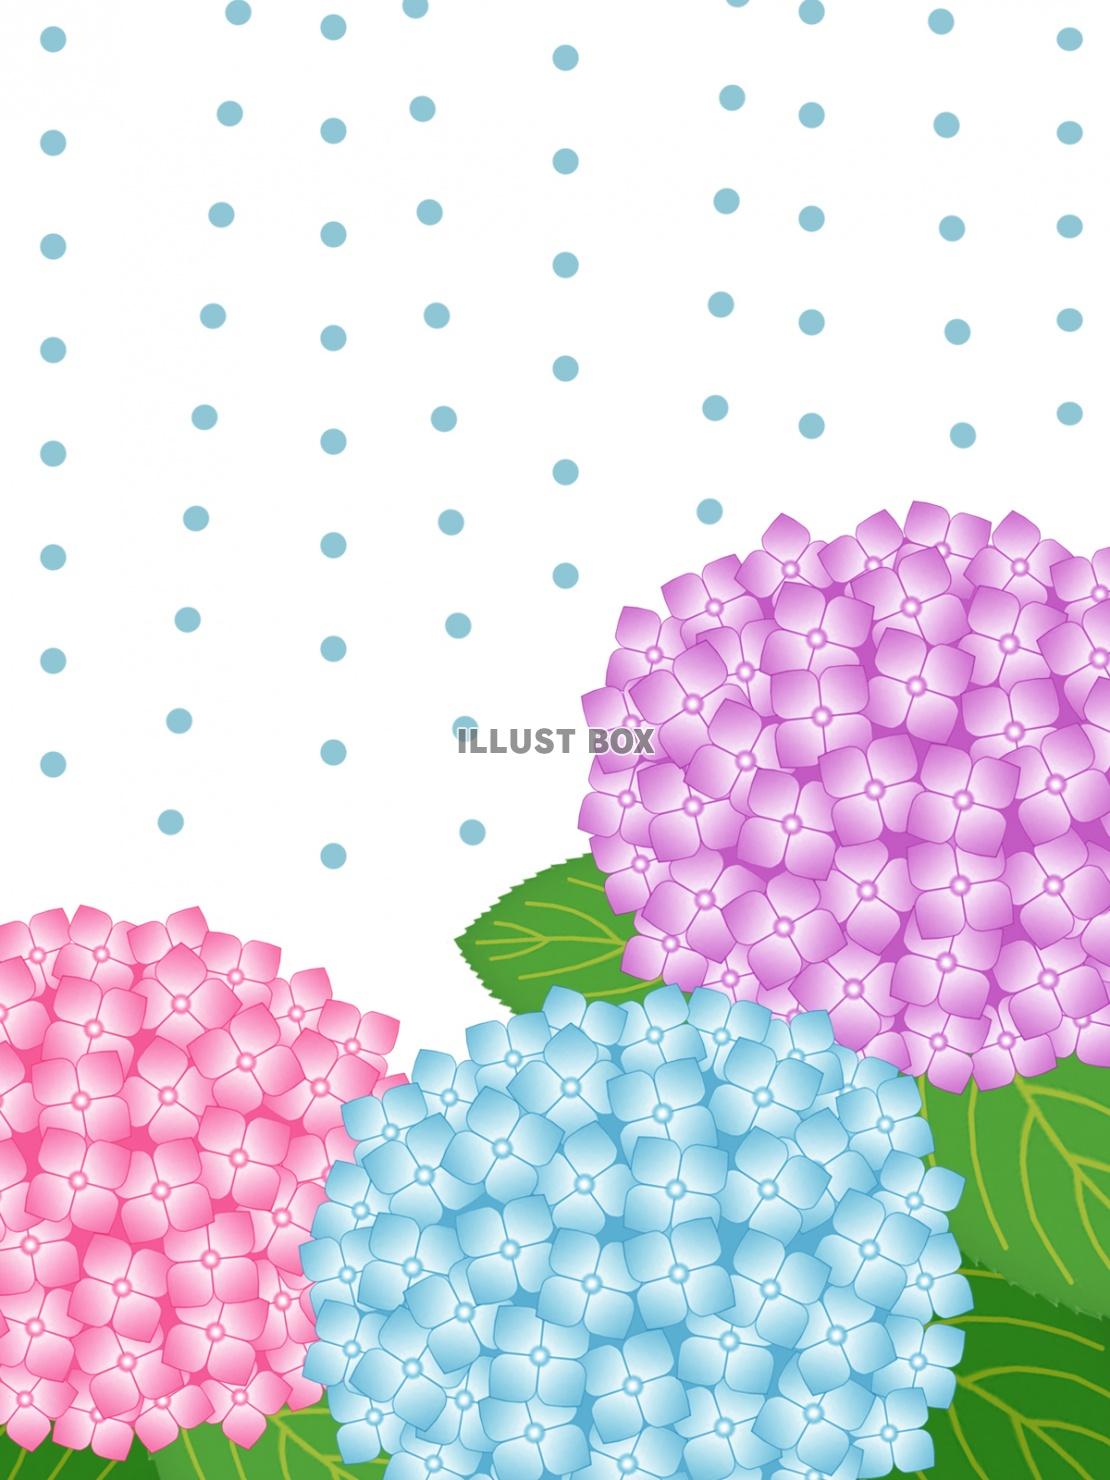 雨降りの紫陽花壁紙画像シンプル背景素材イラスト